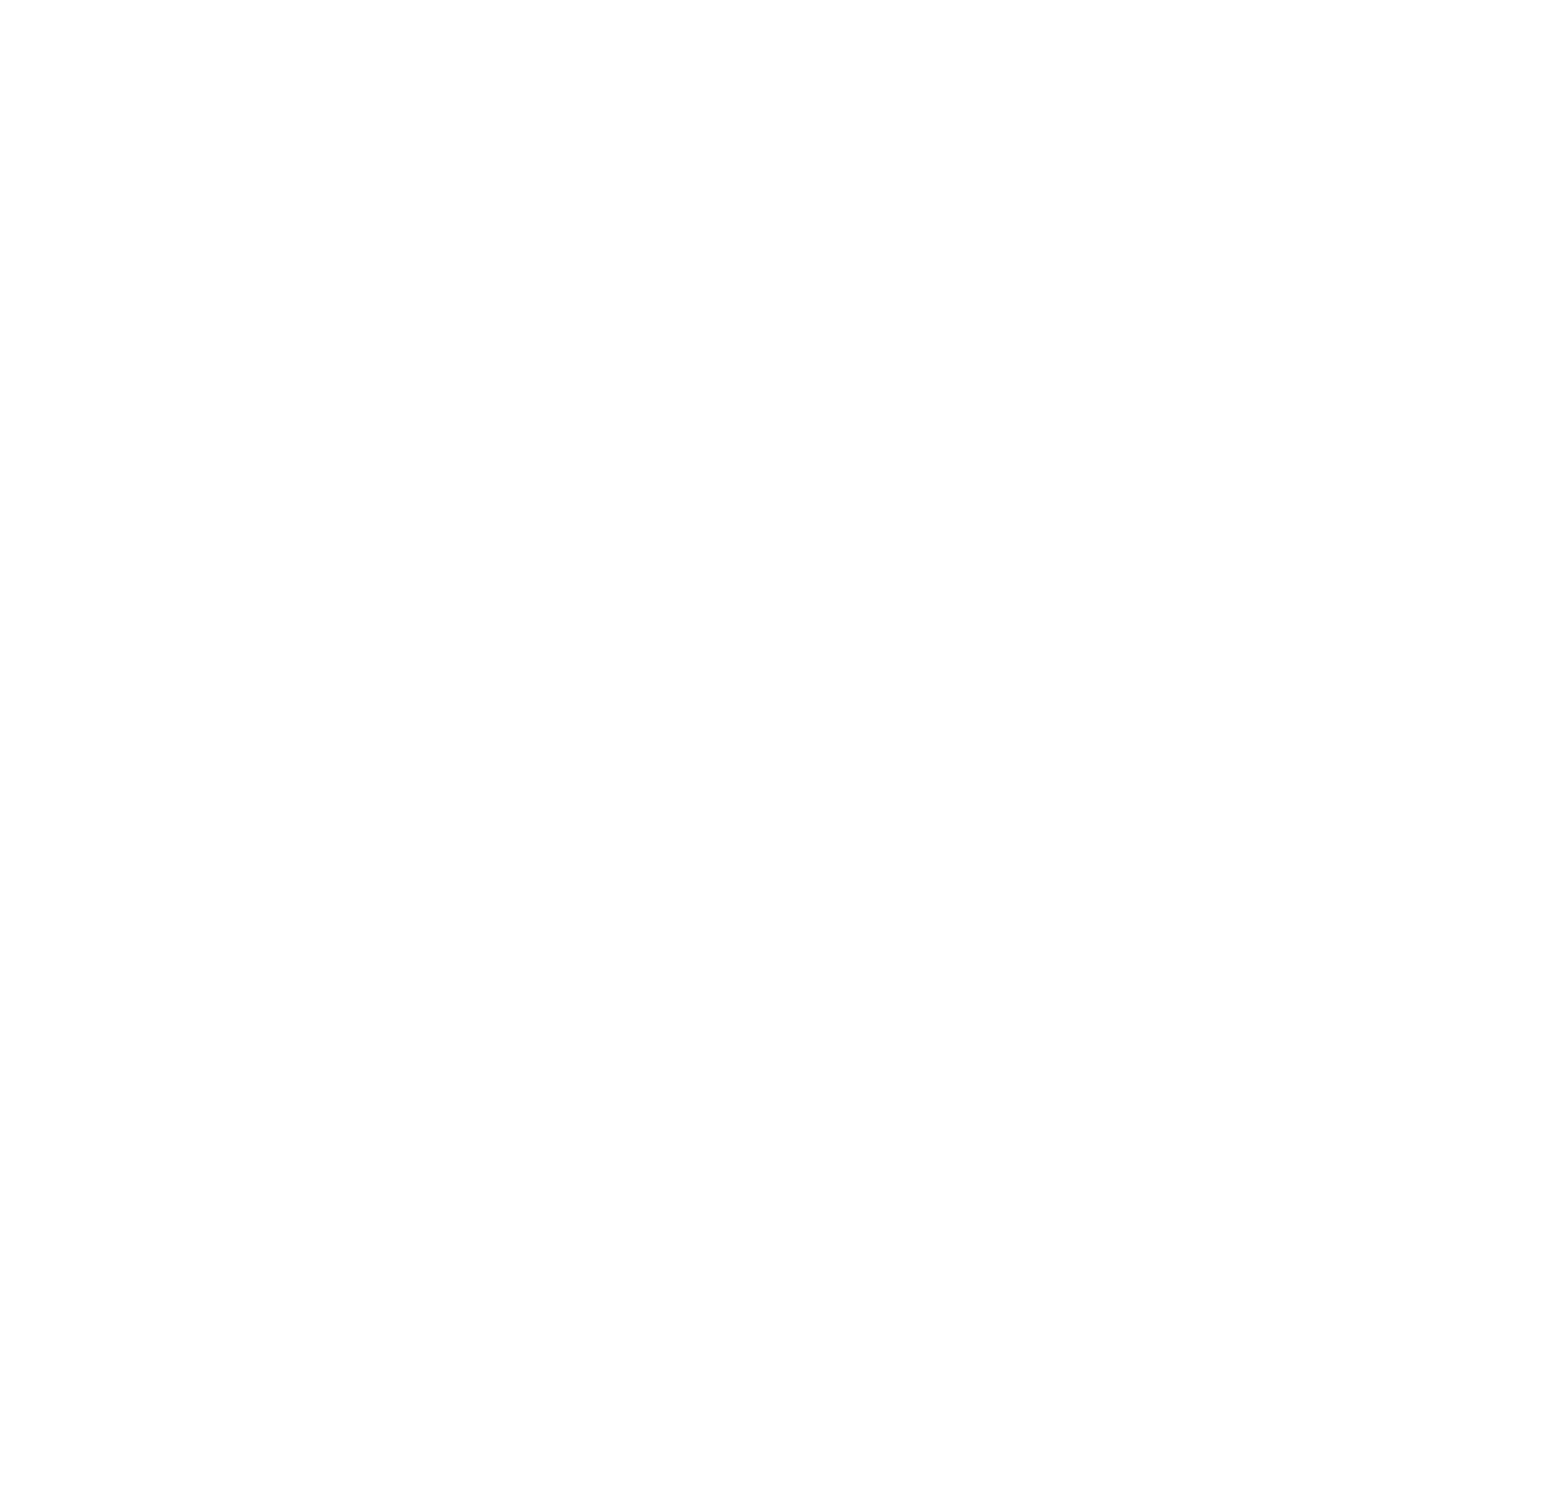 ManyDev Studio logo for dark backgrounds (transparent PNG)